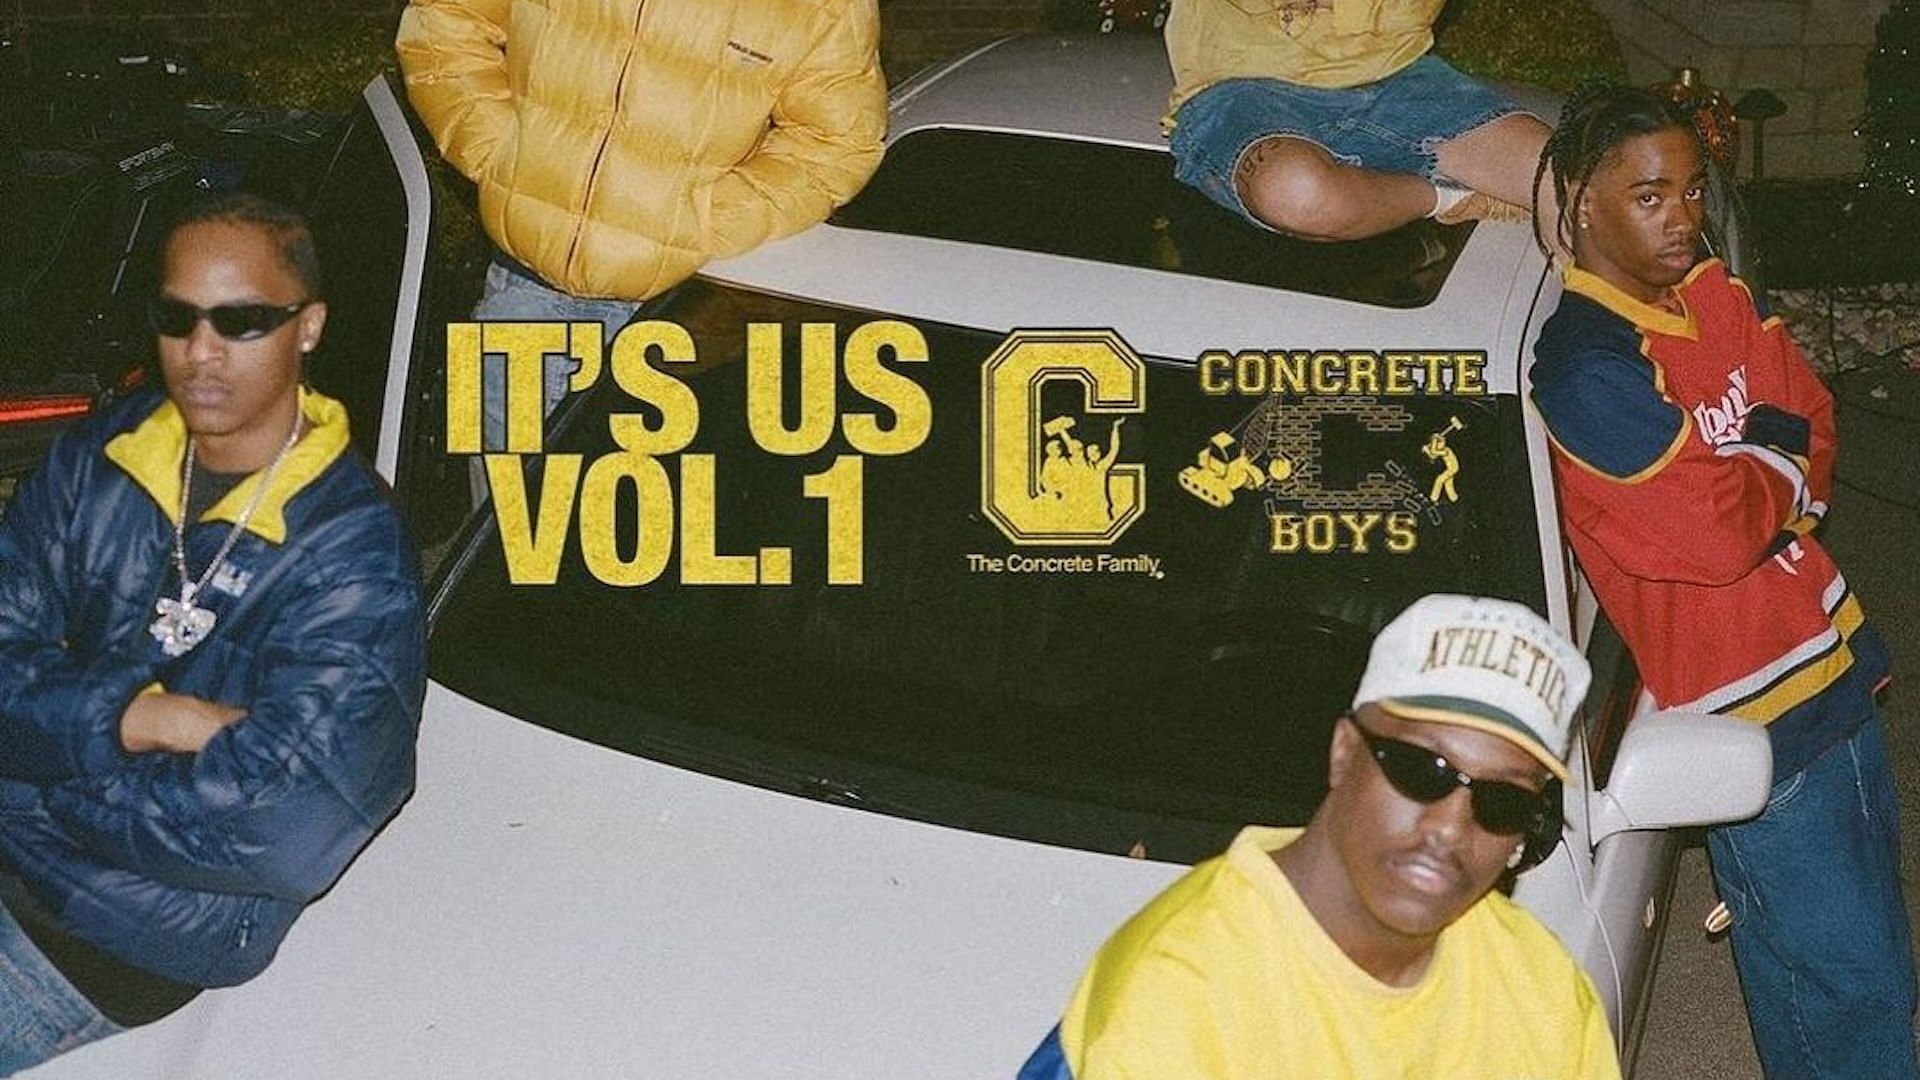 The official album cover for Concrete Boys